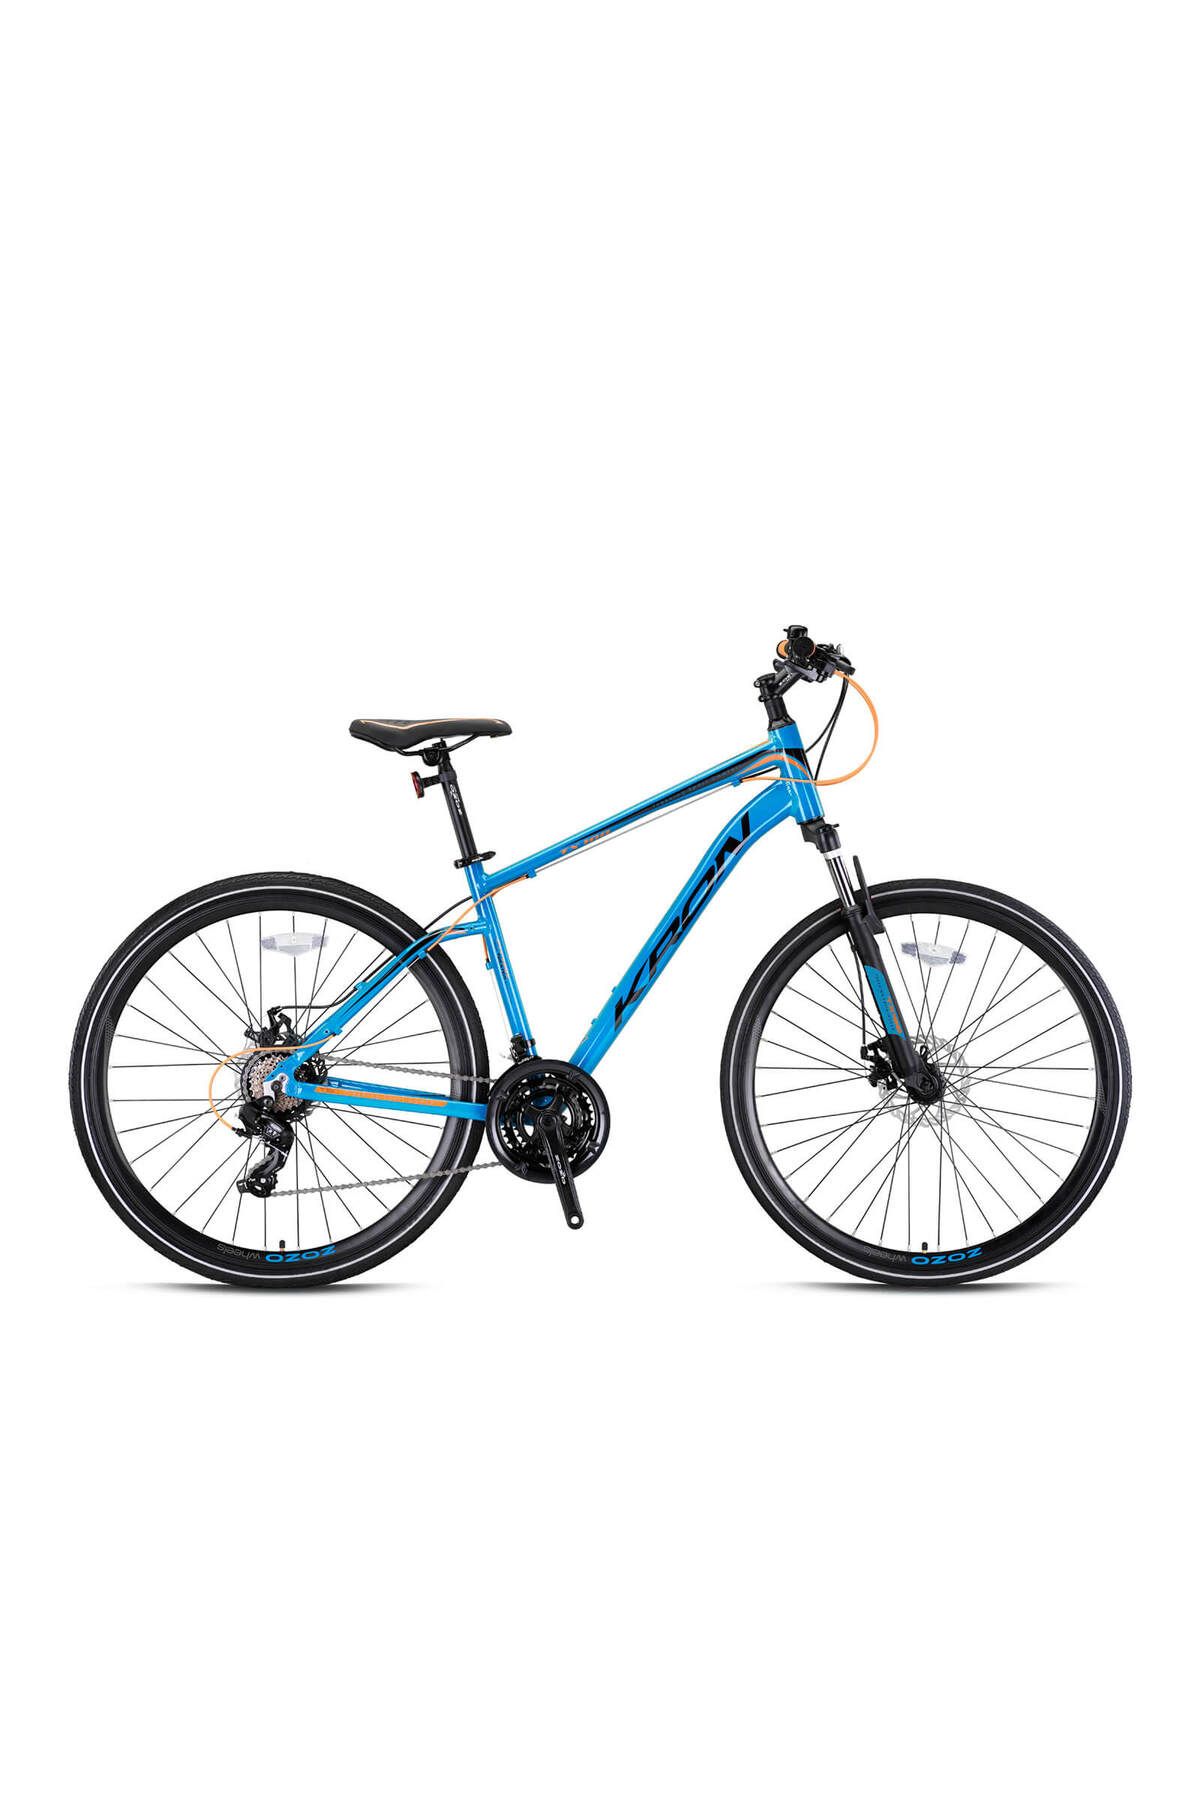 Kron TX100 28 Jant Trekking Bisiklet Mavi Turuncu Siyah 46 cm